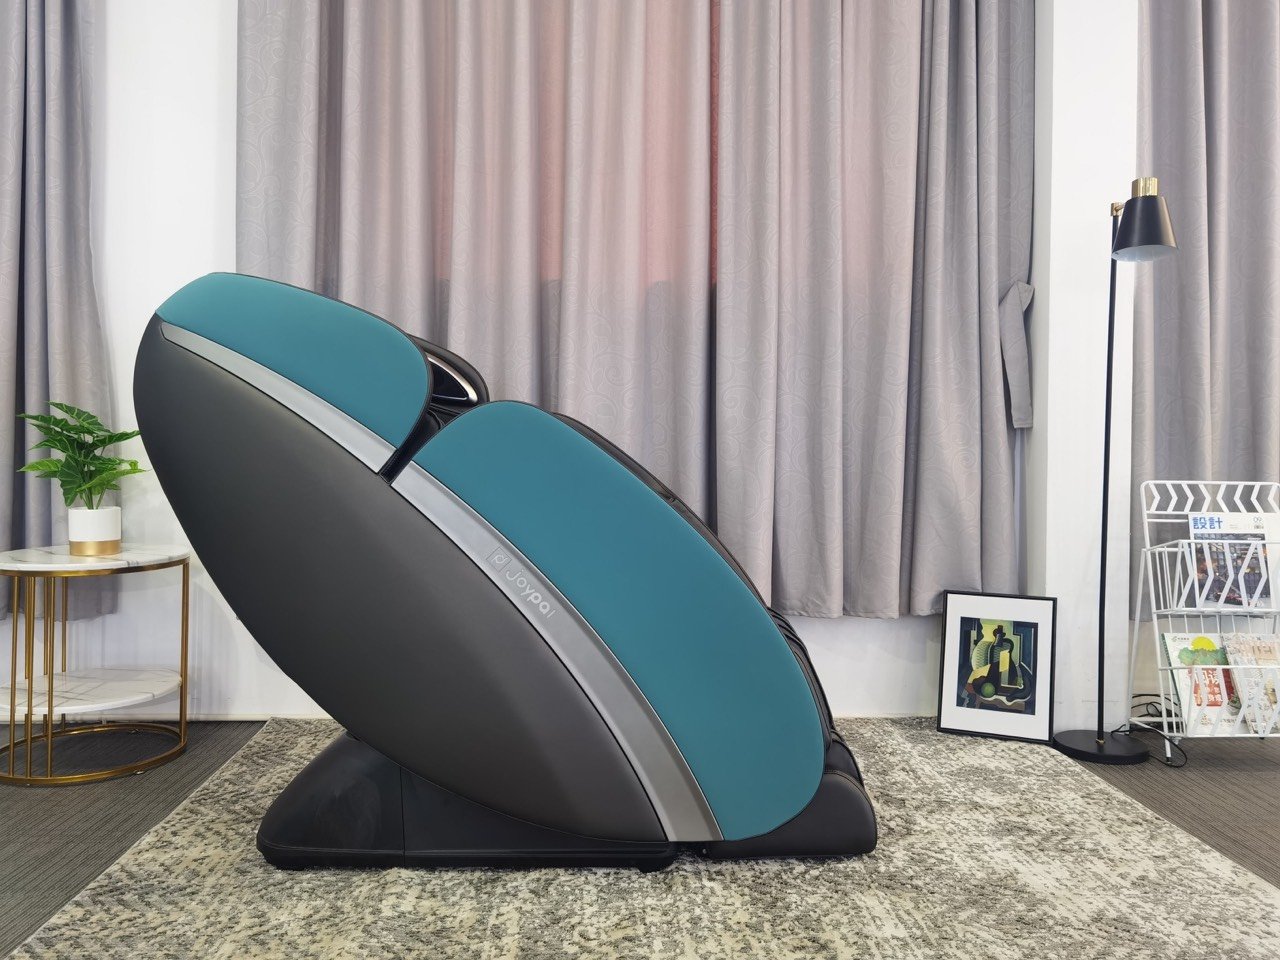 Ghế massage thông minh XIAOMI JOYPAL MONSTER EC6602 với thiết kế sang trọng